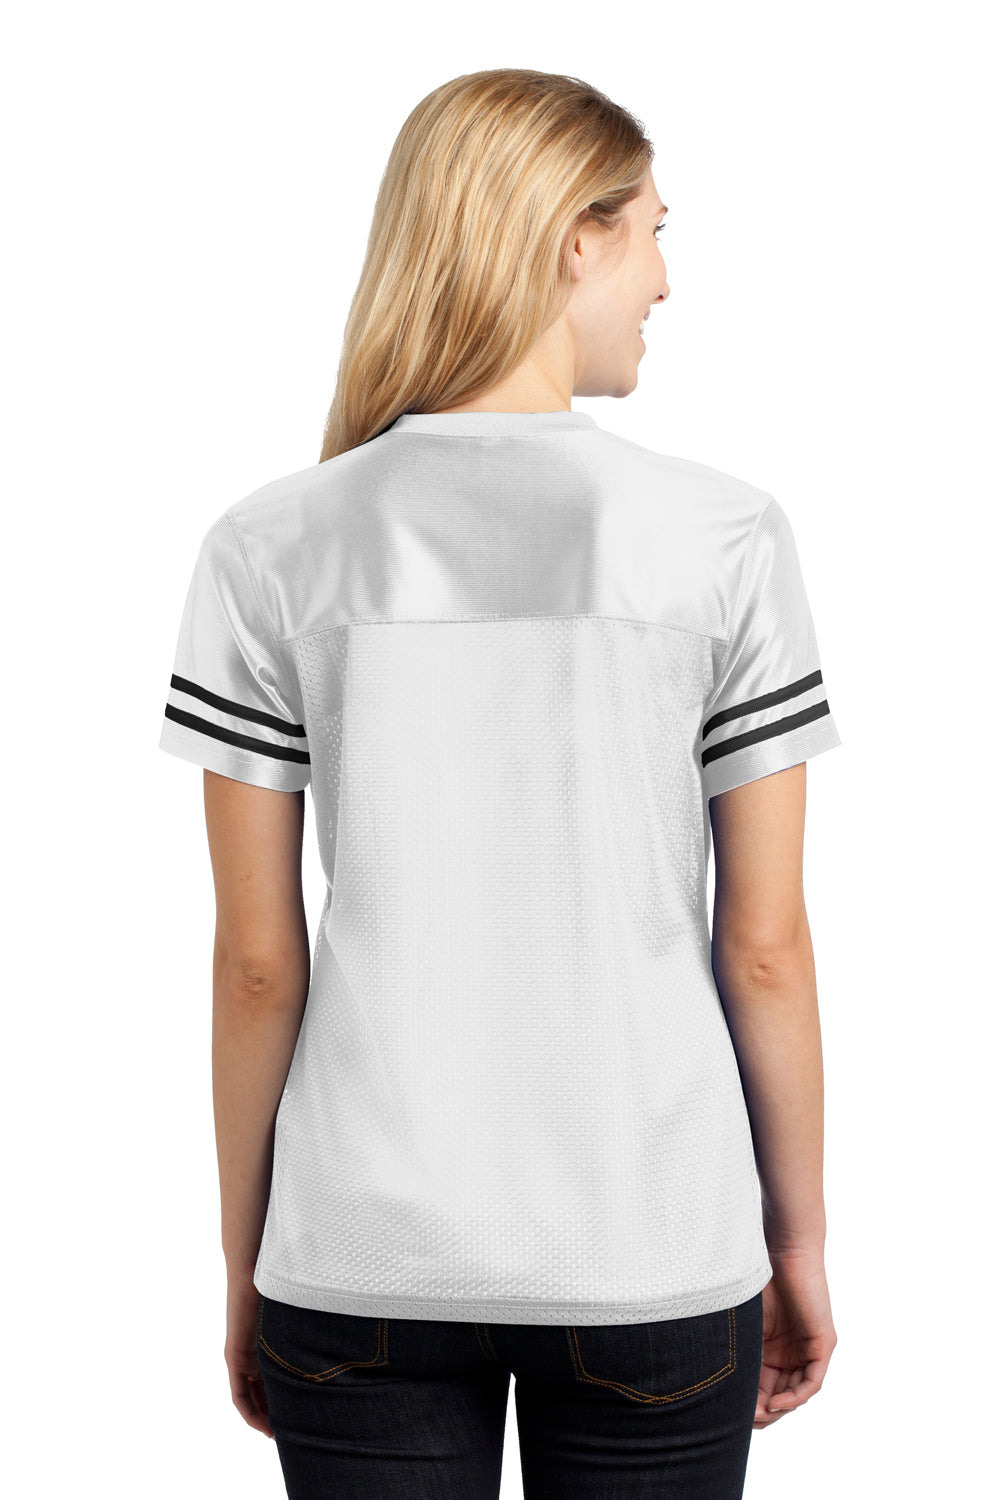 Sport-Tek LST307 Womens Short Sleeve V-Neck T-Shirt White Back